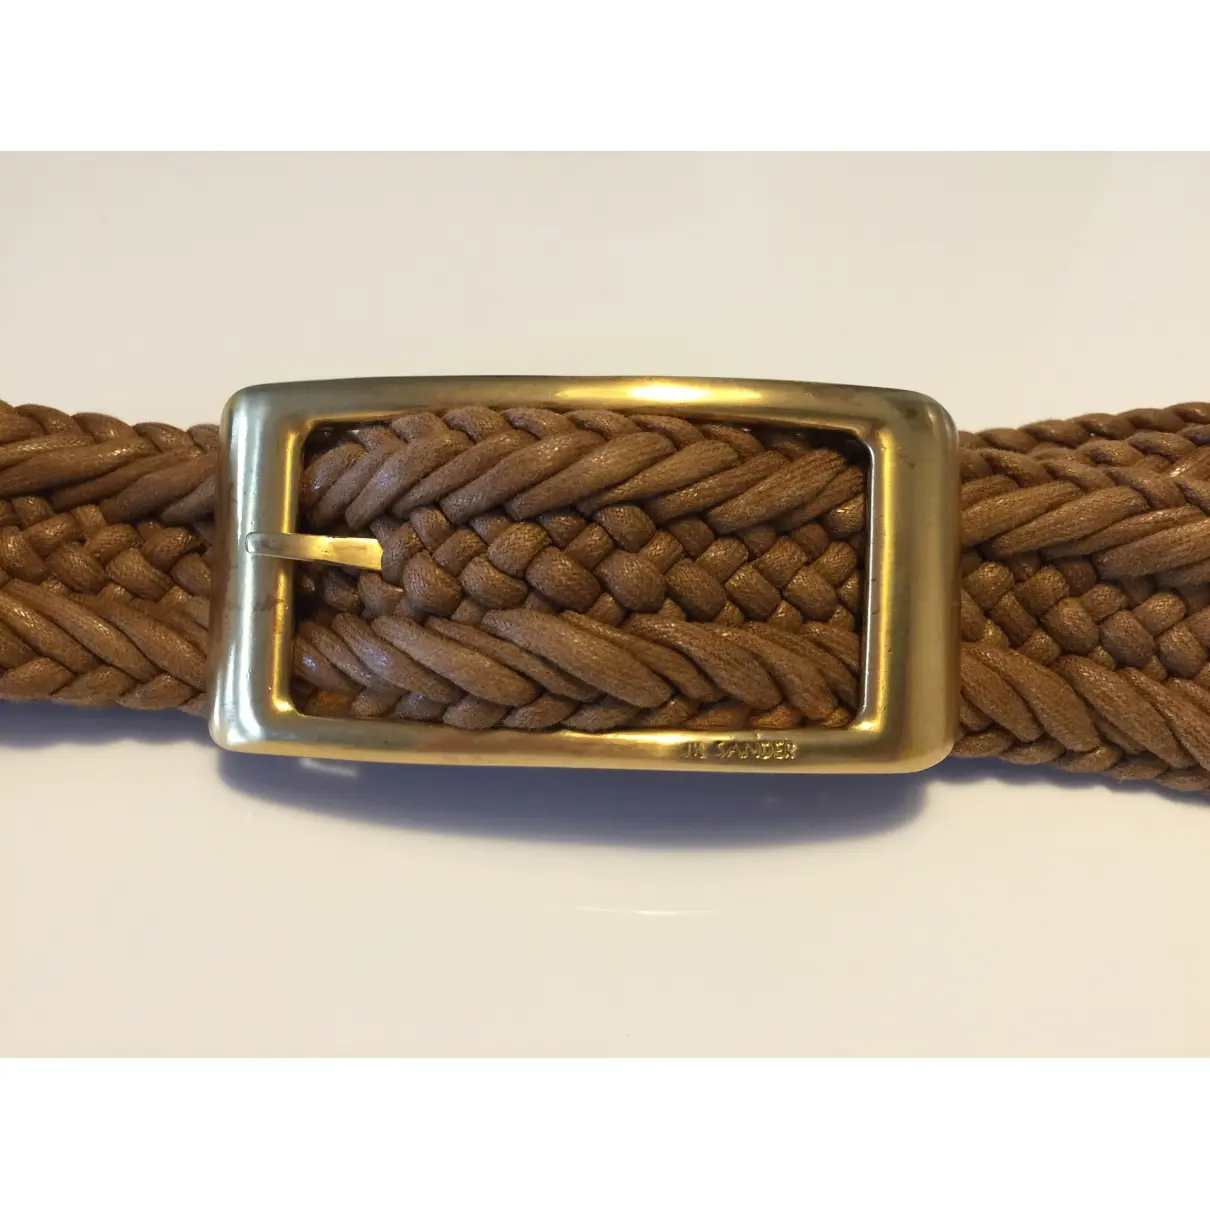 Jil Sander Leather belt for sale - Vintage